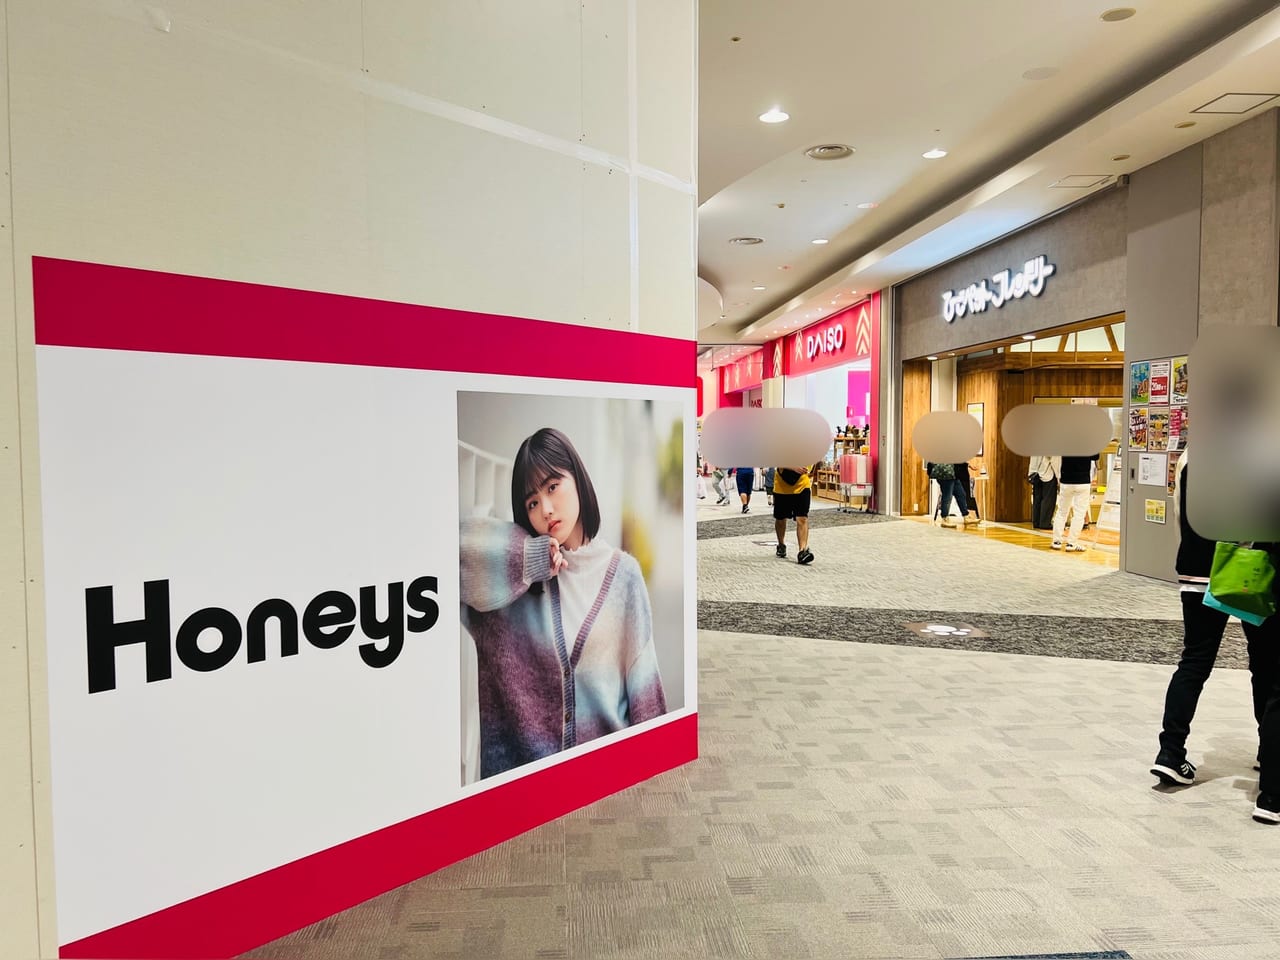 2023年10月27日オープン予定の「Honeys イオンモール高知店」の周辺の様子